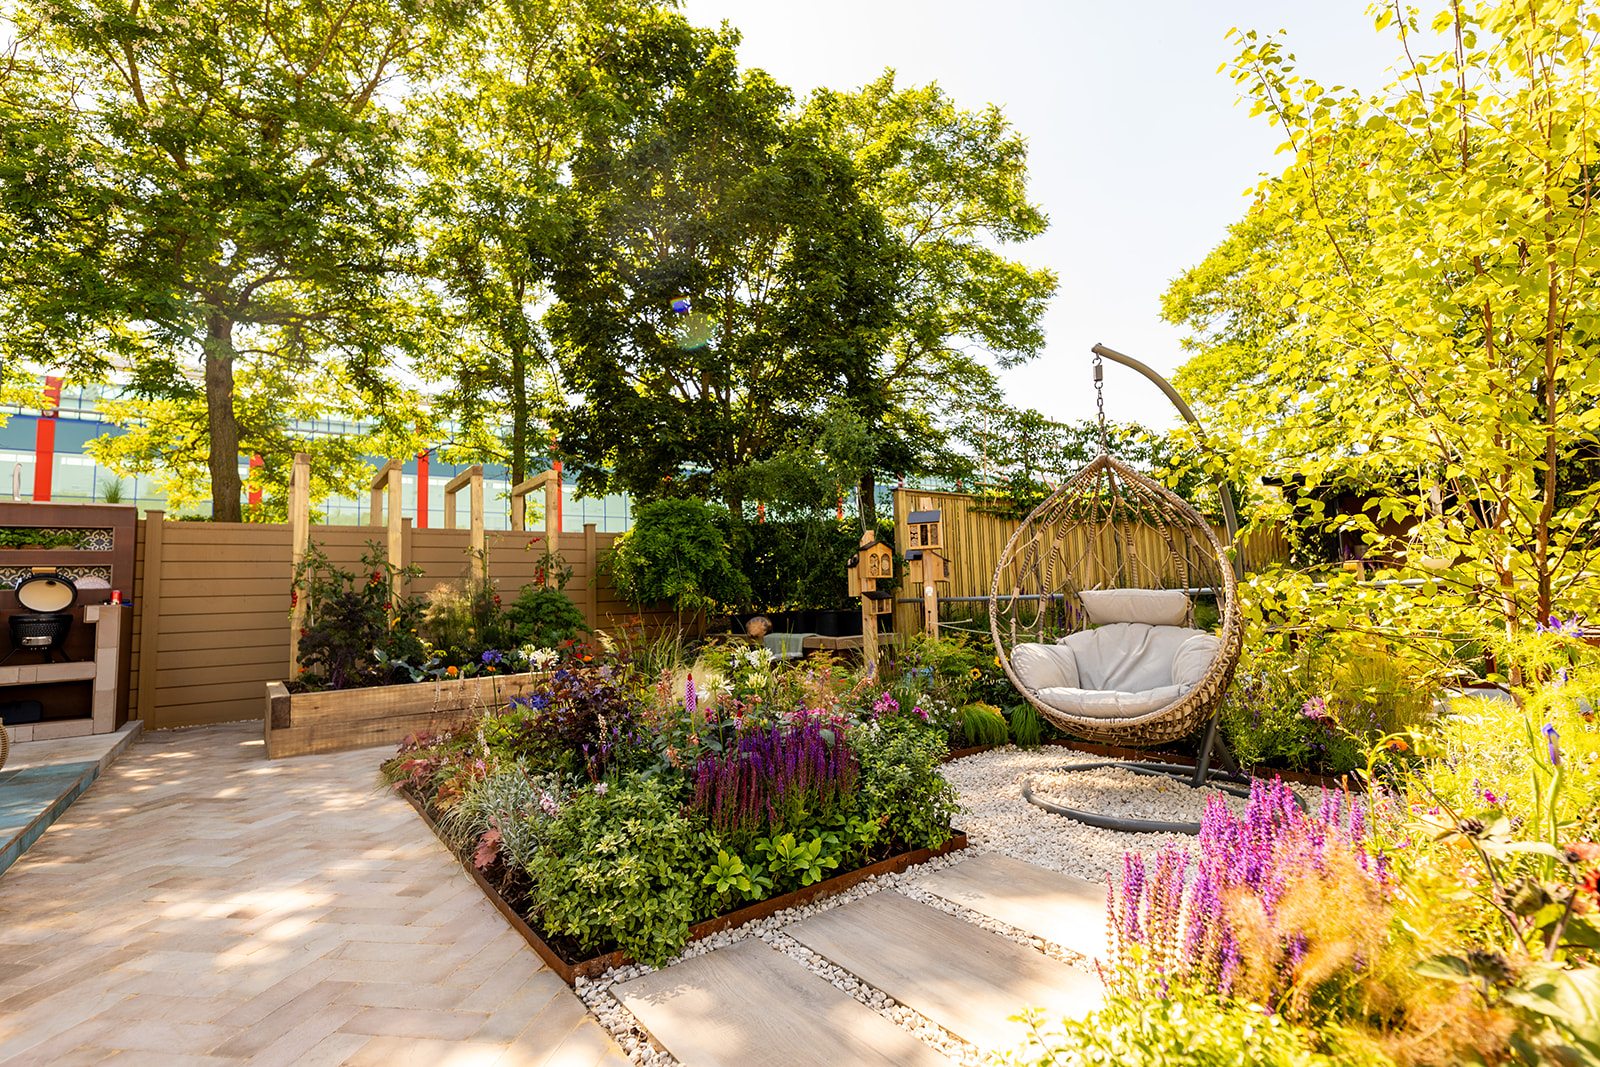 BBC Gardeners World Show garden, chic garden getaway